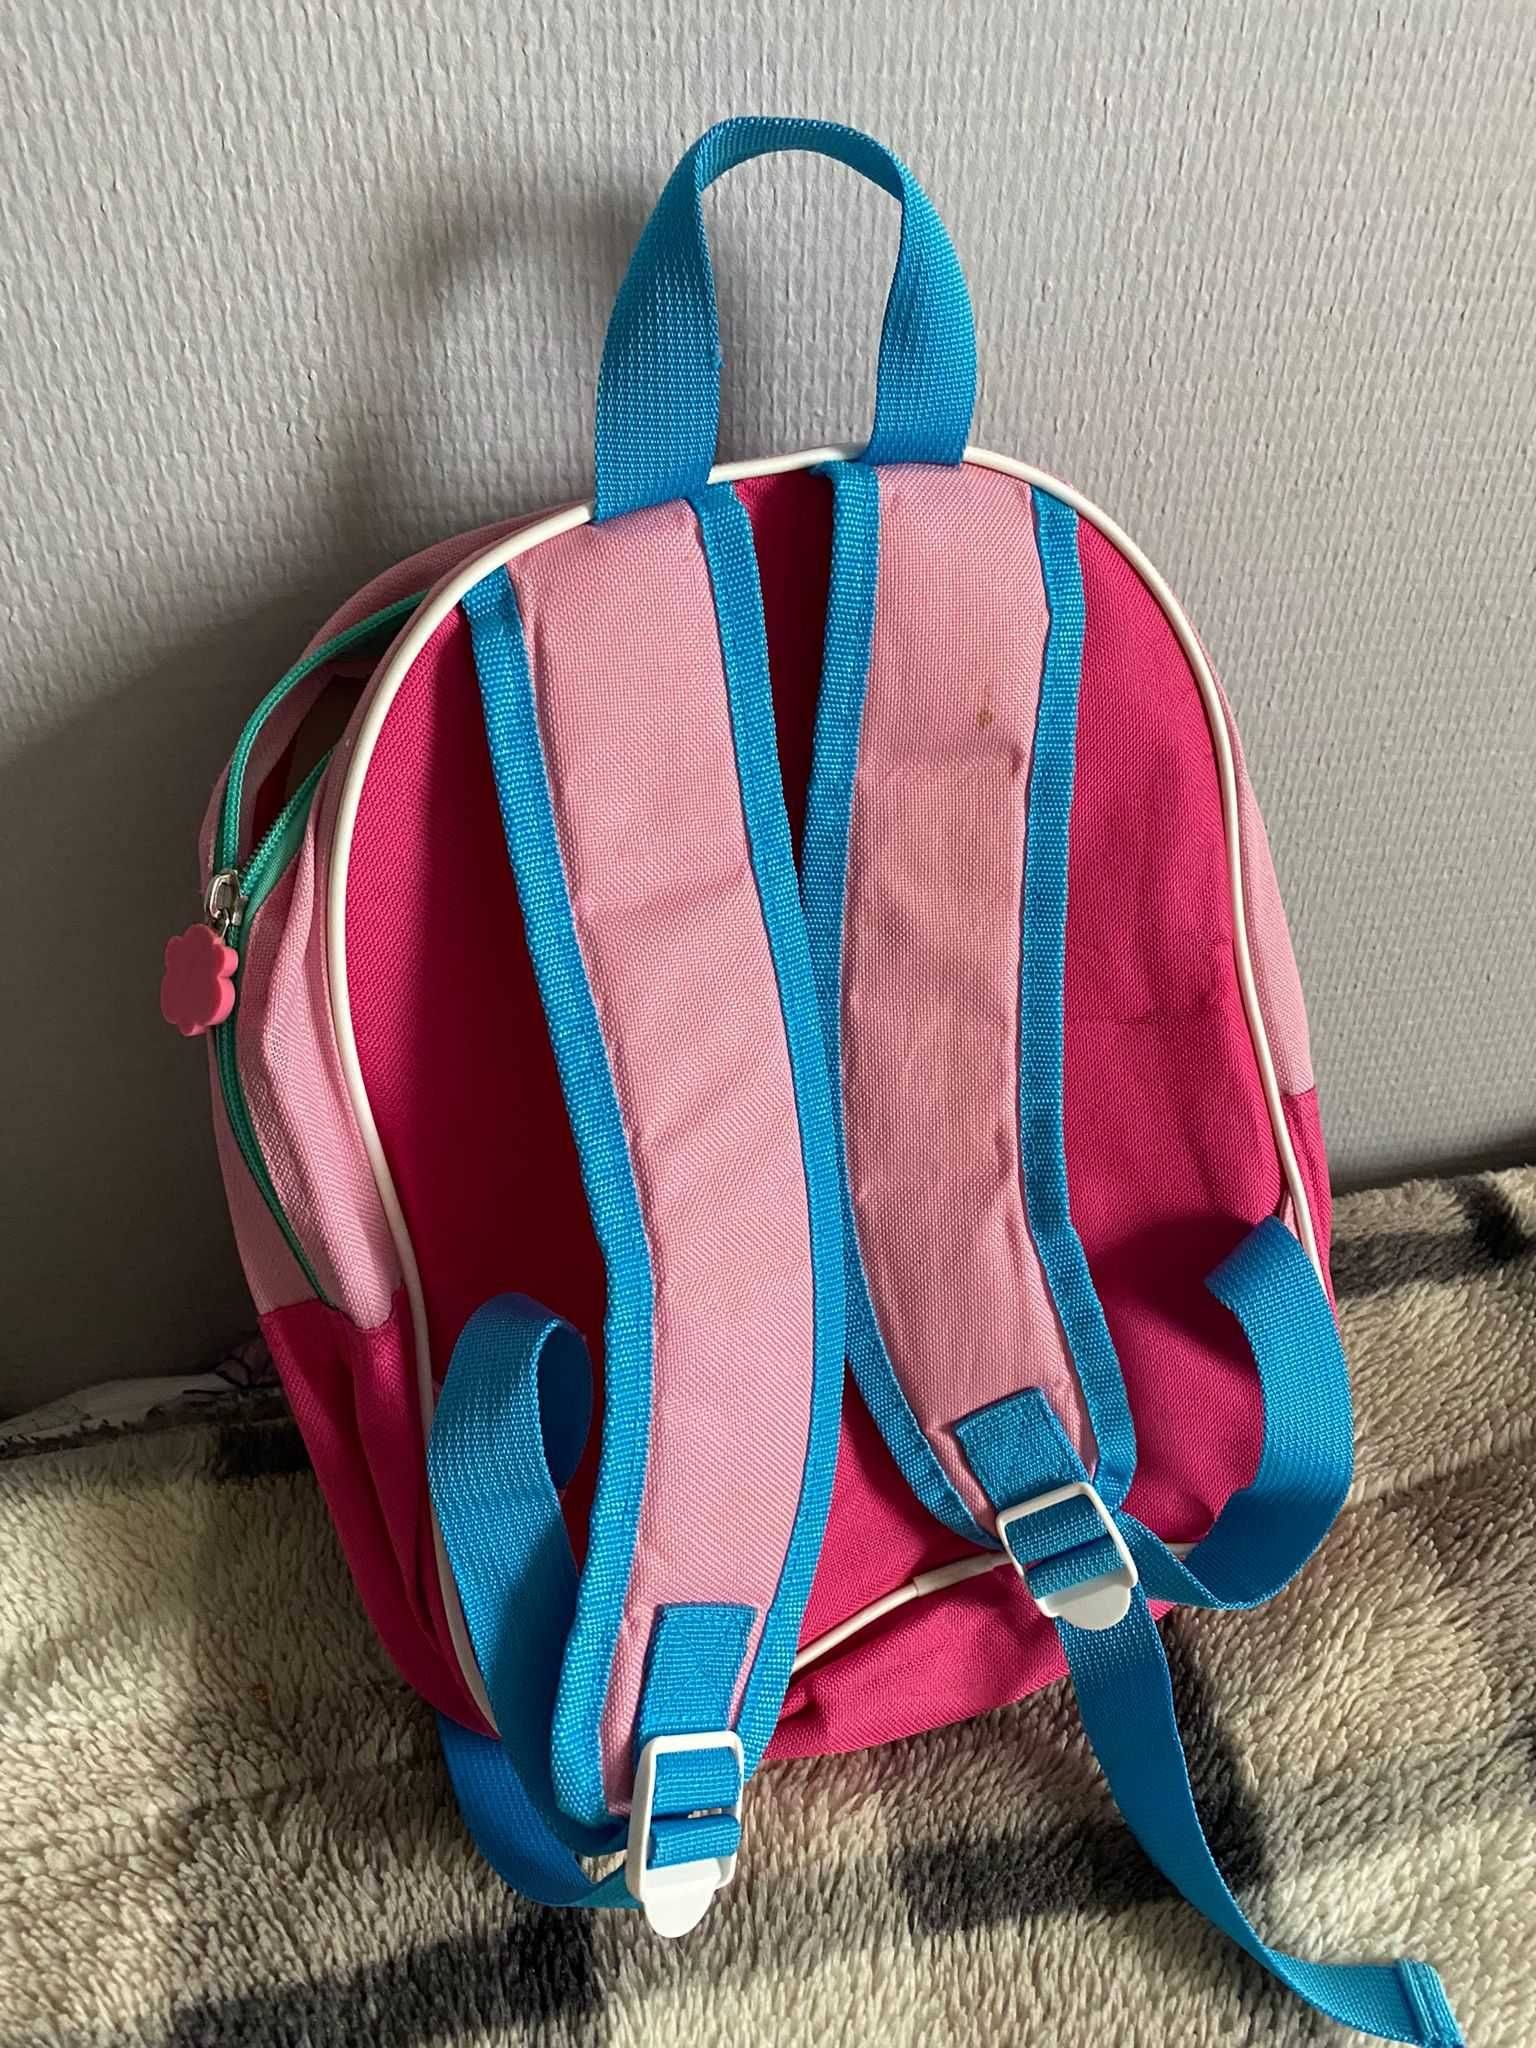 Plecak Trolle dla Dziecka